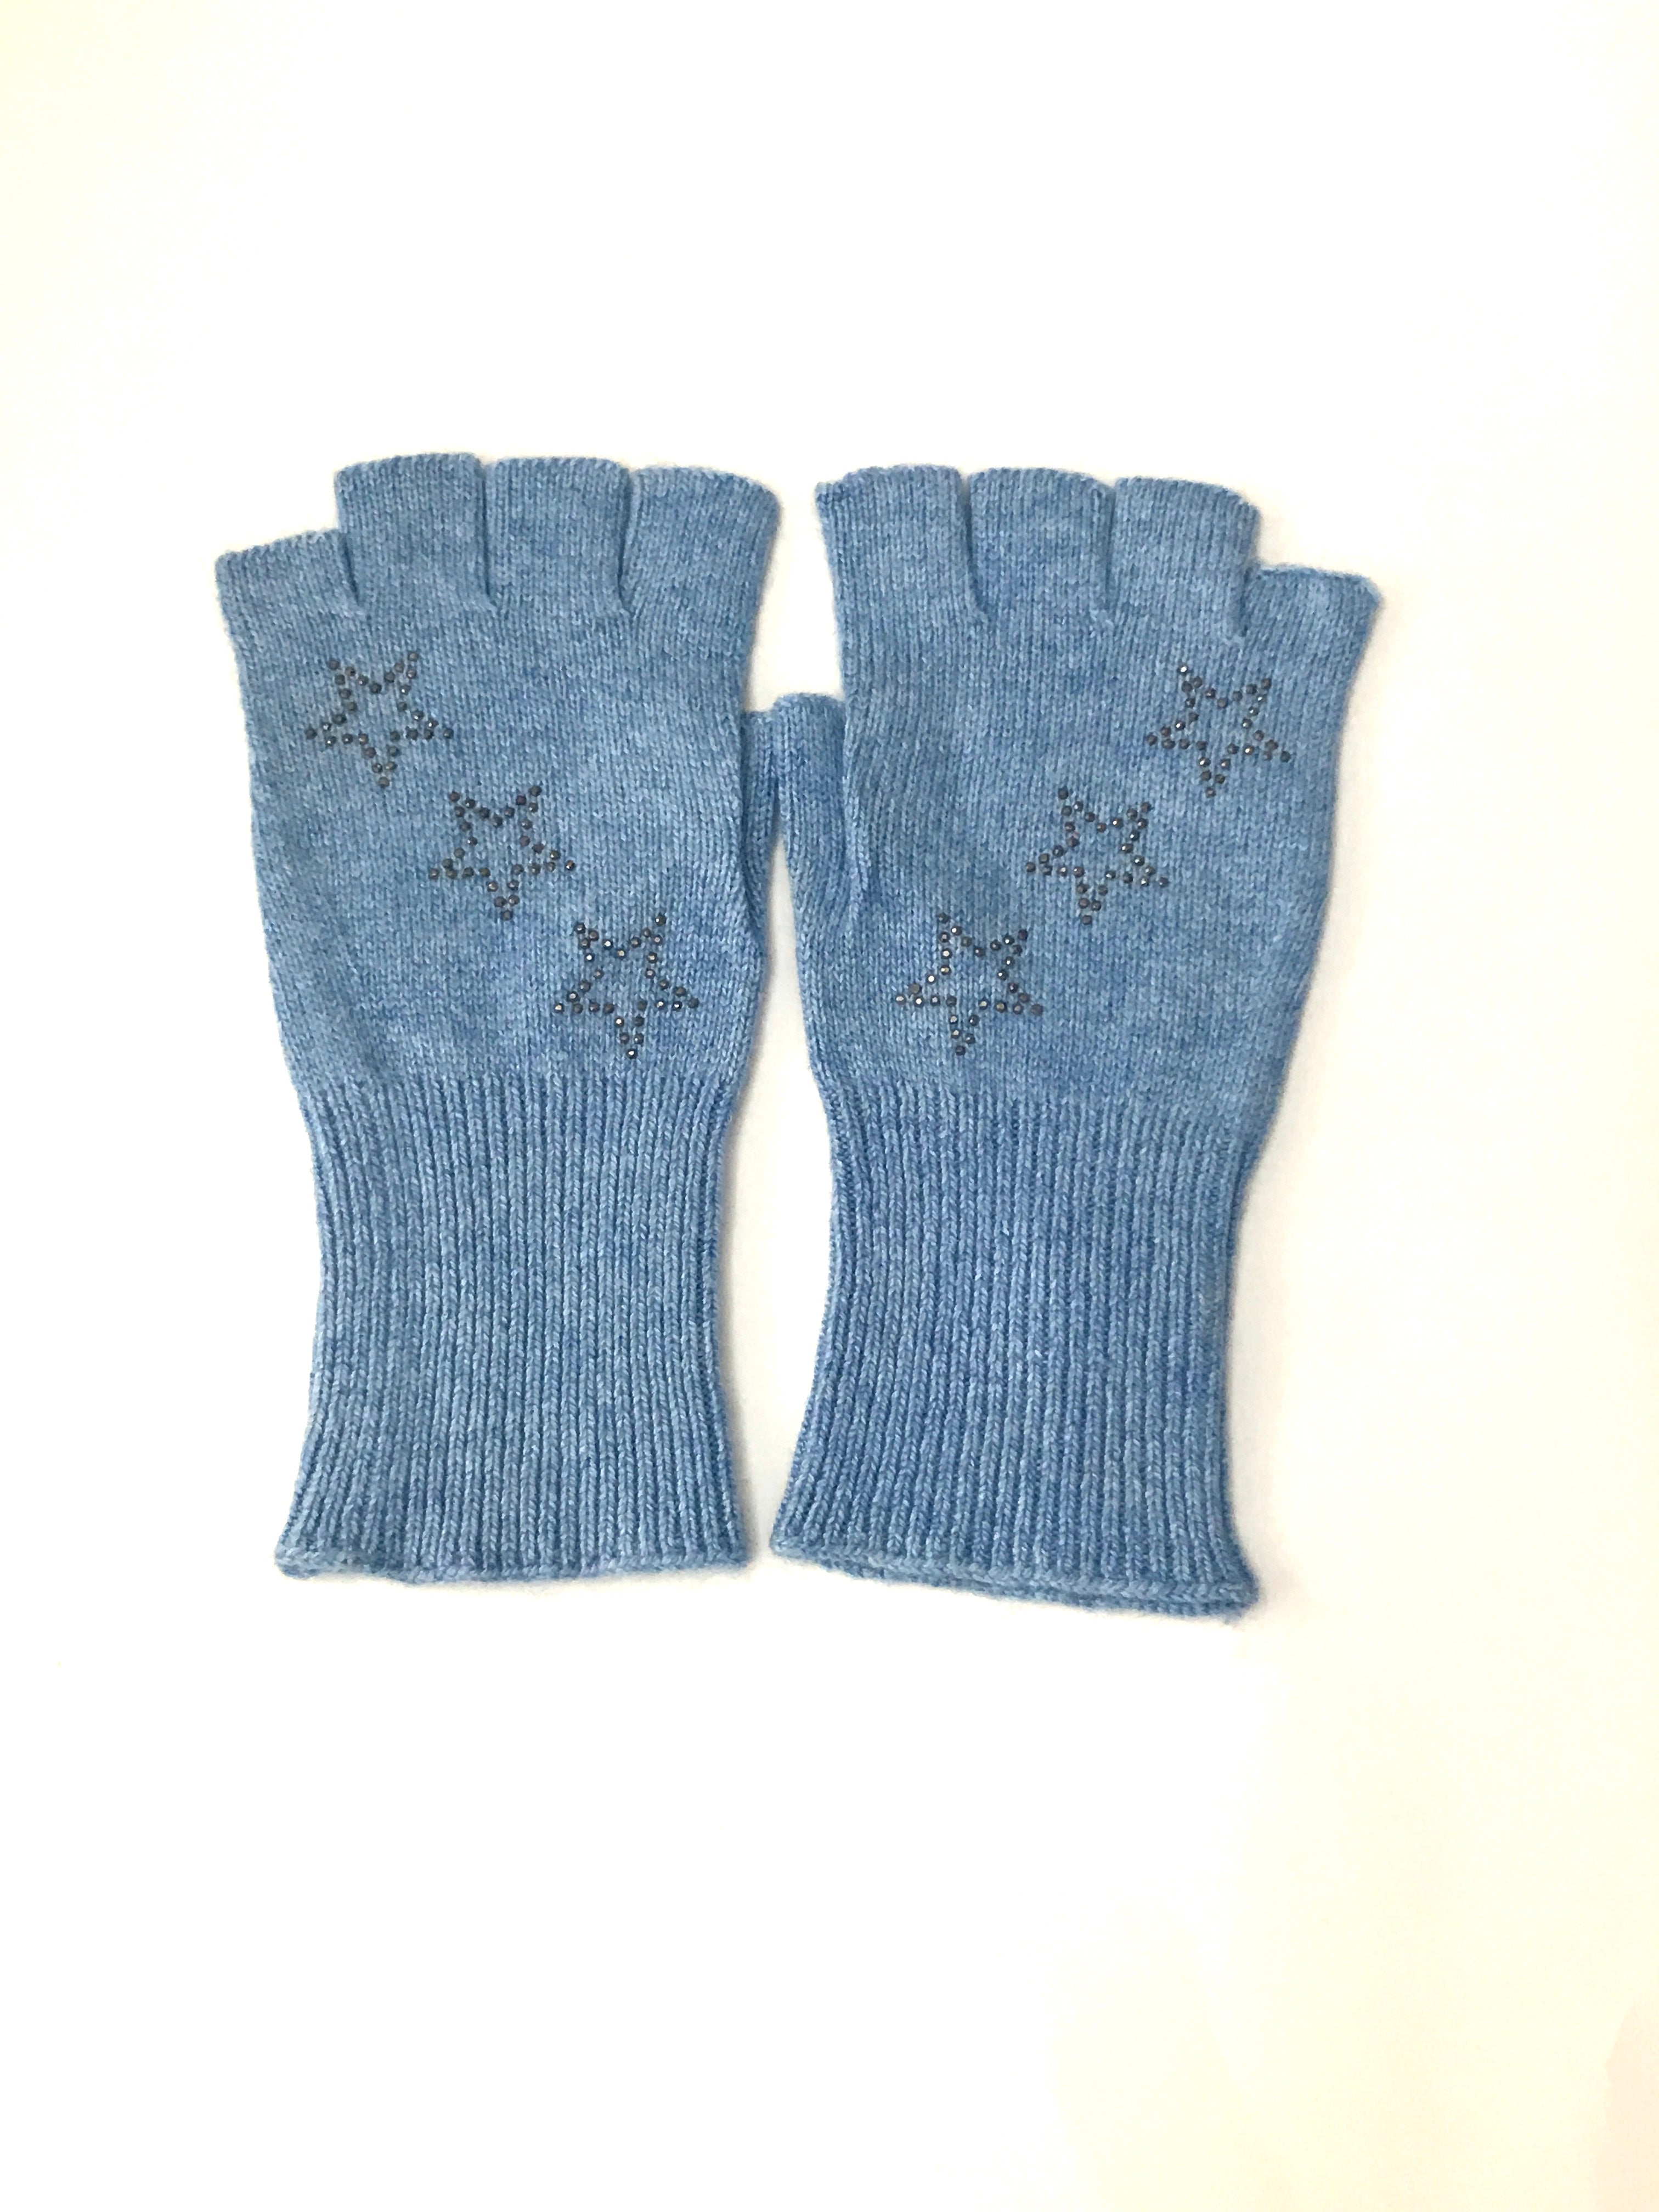 star fingerless gloves light blue/hematite